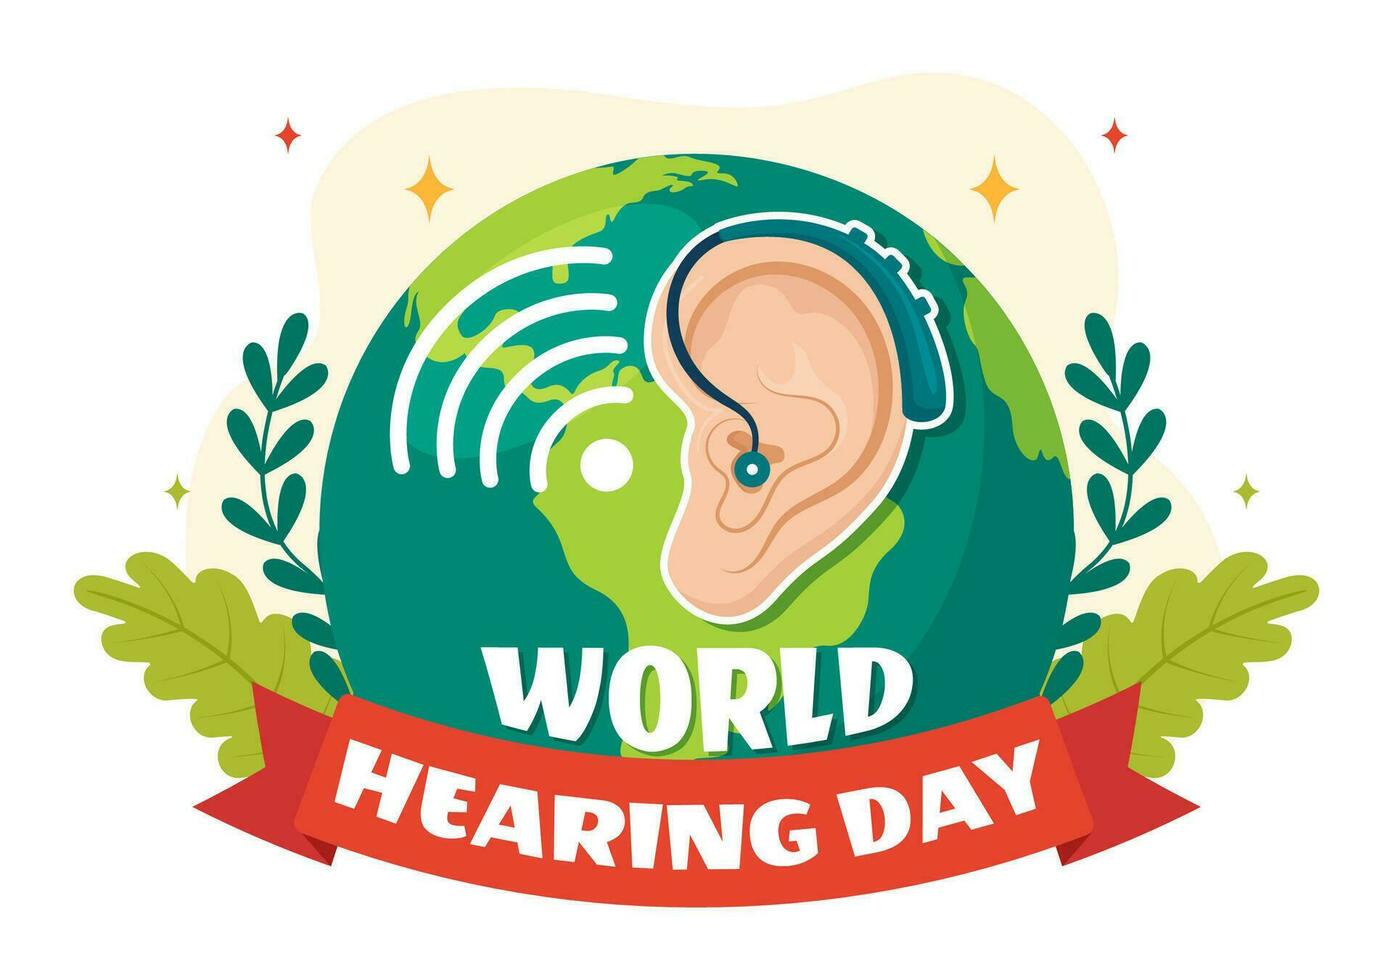 mundo audição dia vetor ilustração em 3 marcha para levantar consciência em quão para evita surdez e orelha tratamento dentro plano cuidados de saúde fundo